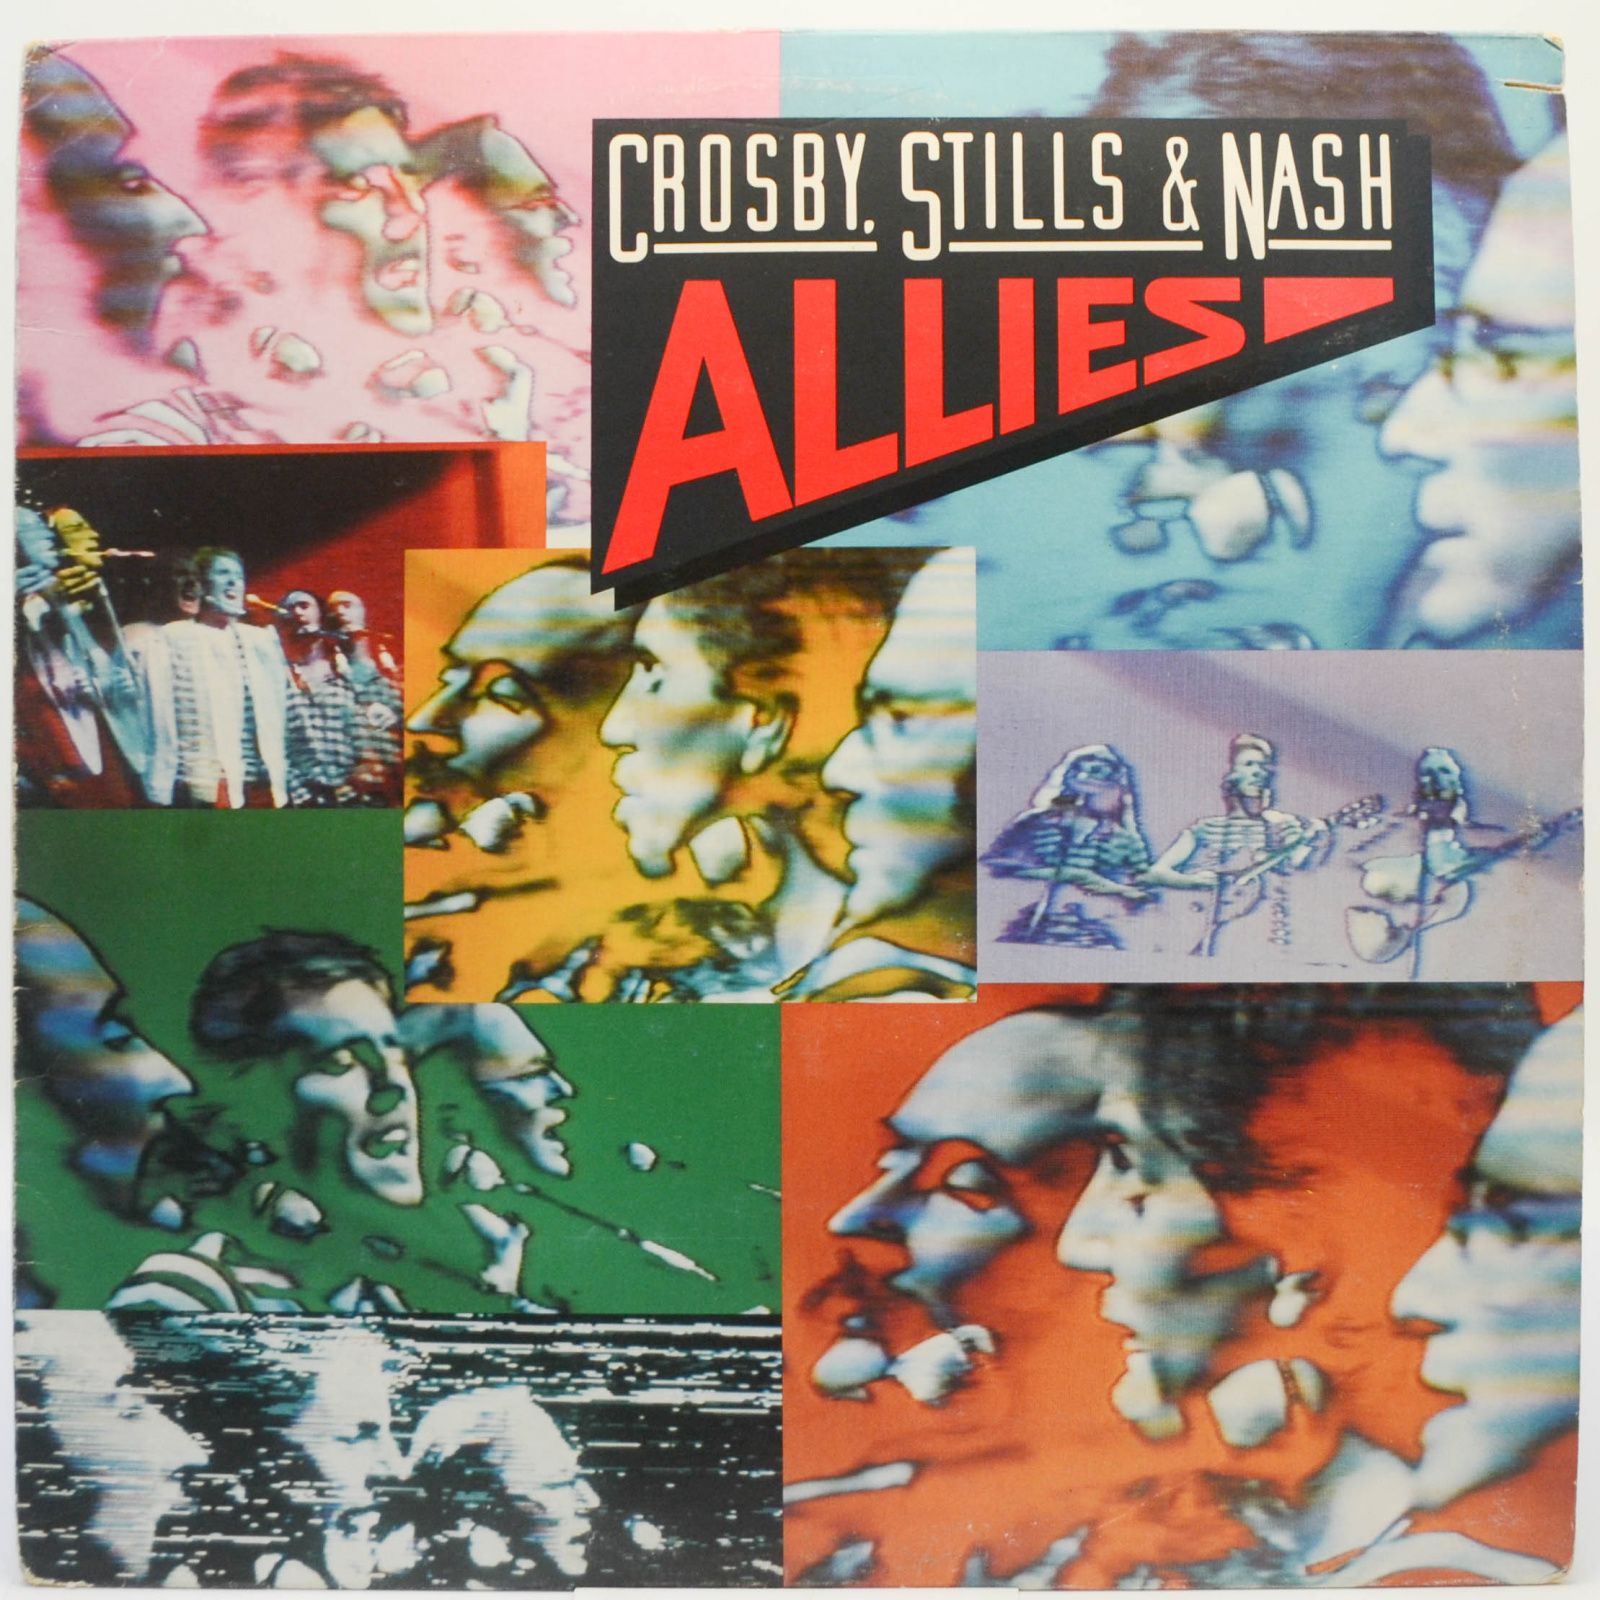 Crosby, Stills & Nash — Allies, 1983